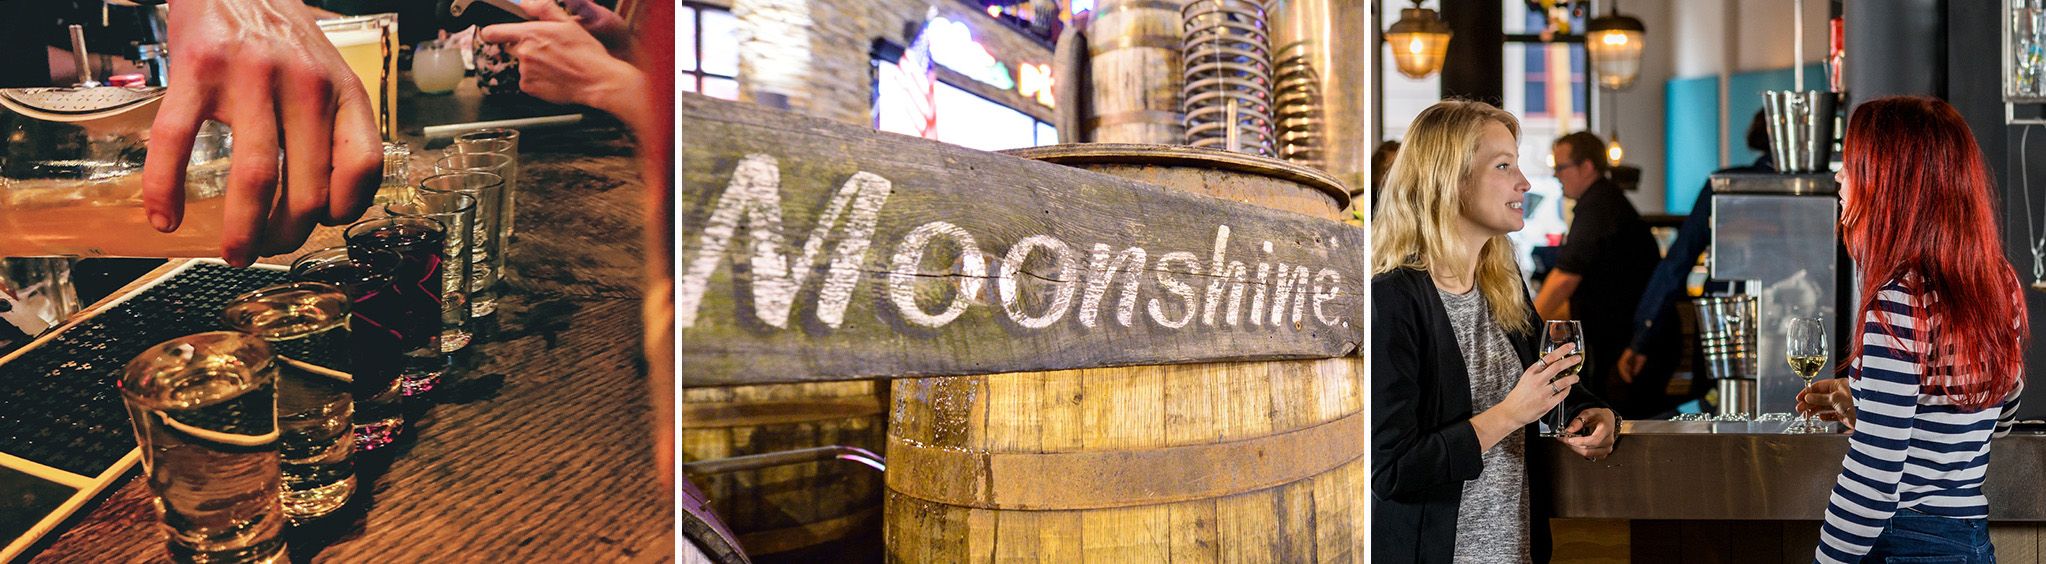 Smith Creek Moonshine at Branson Landing